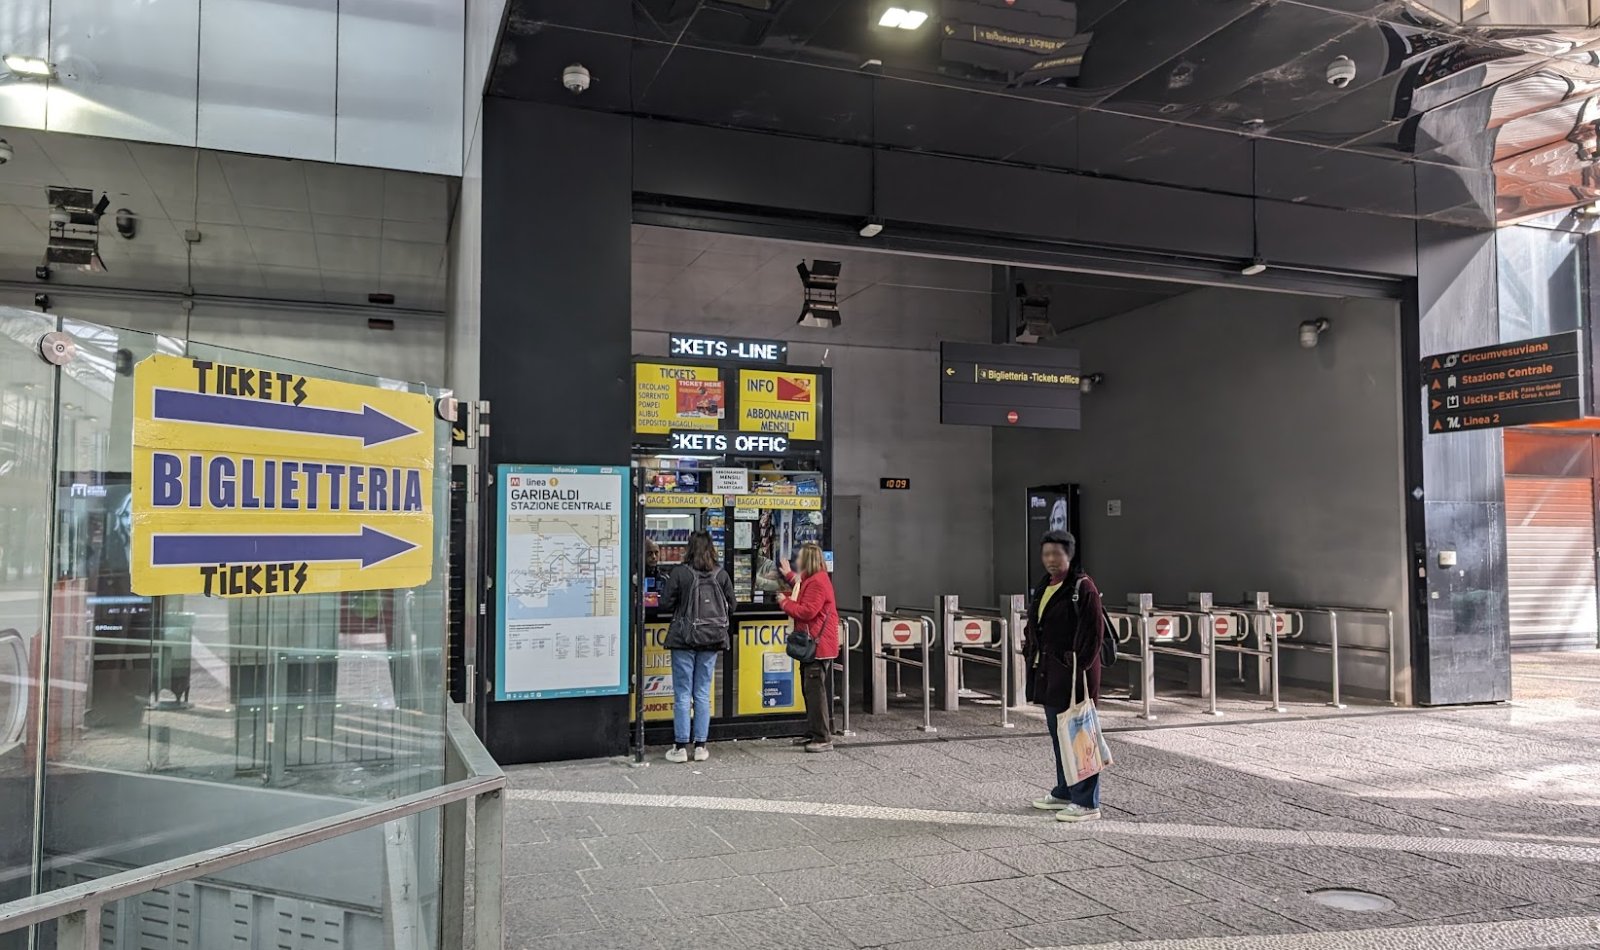 ナポリ地下鉄 1 号線のチケット売り場